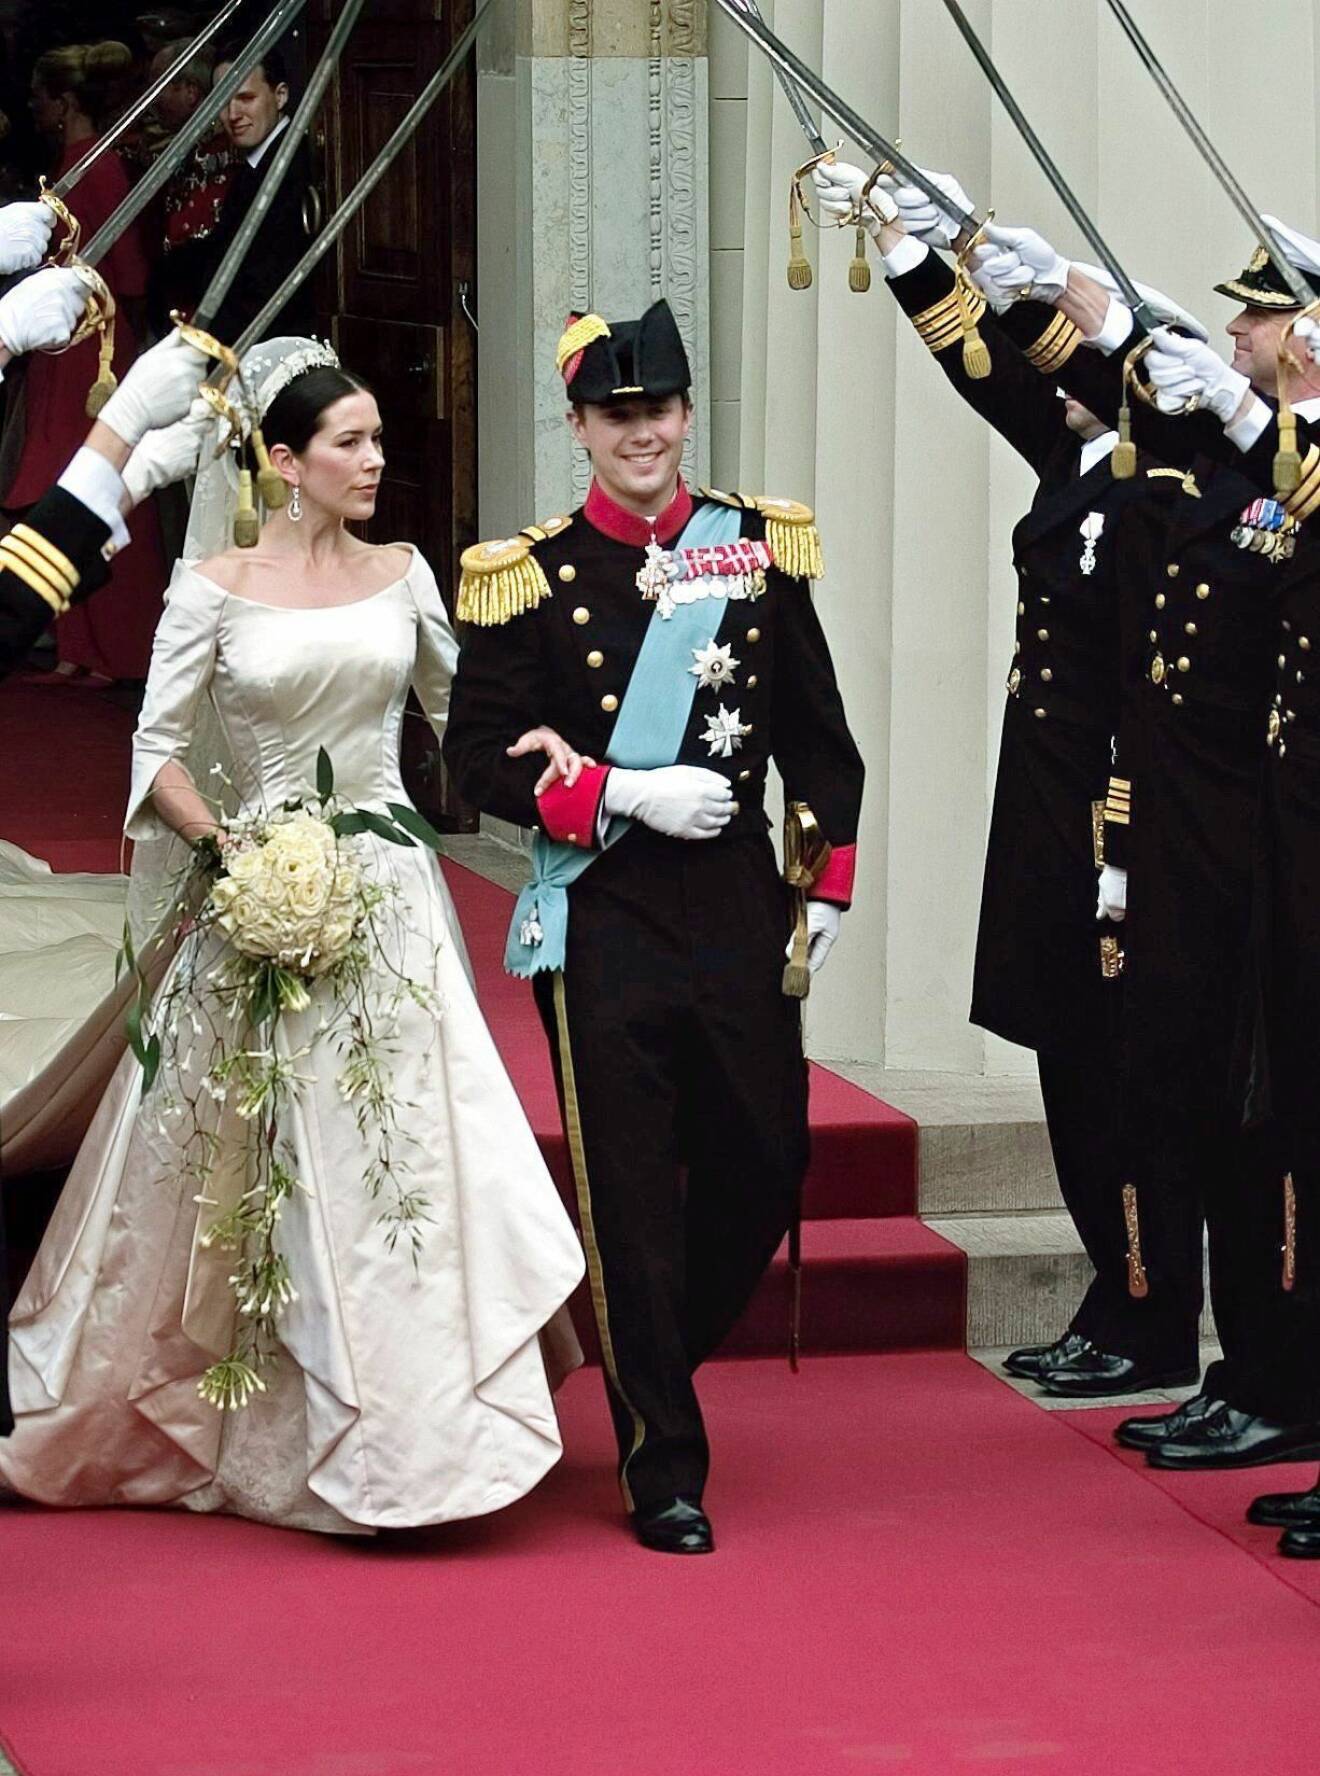 Kronprinsessan Mary gifte sig i en brudklänning av Uffe Frank.